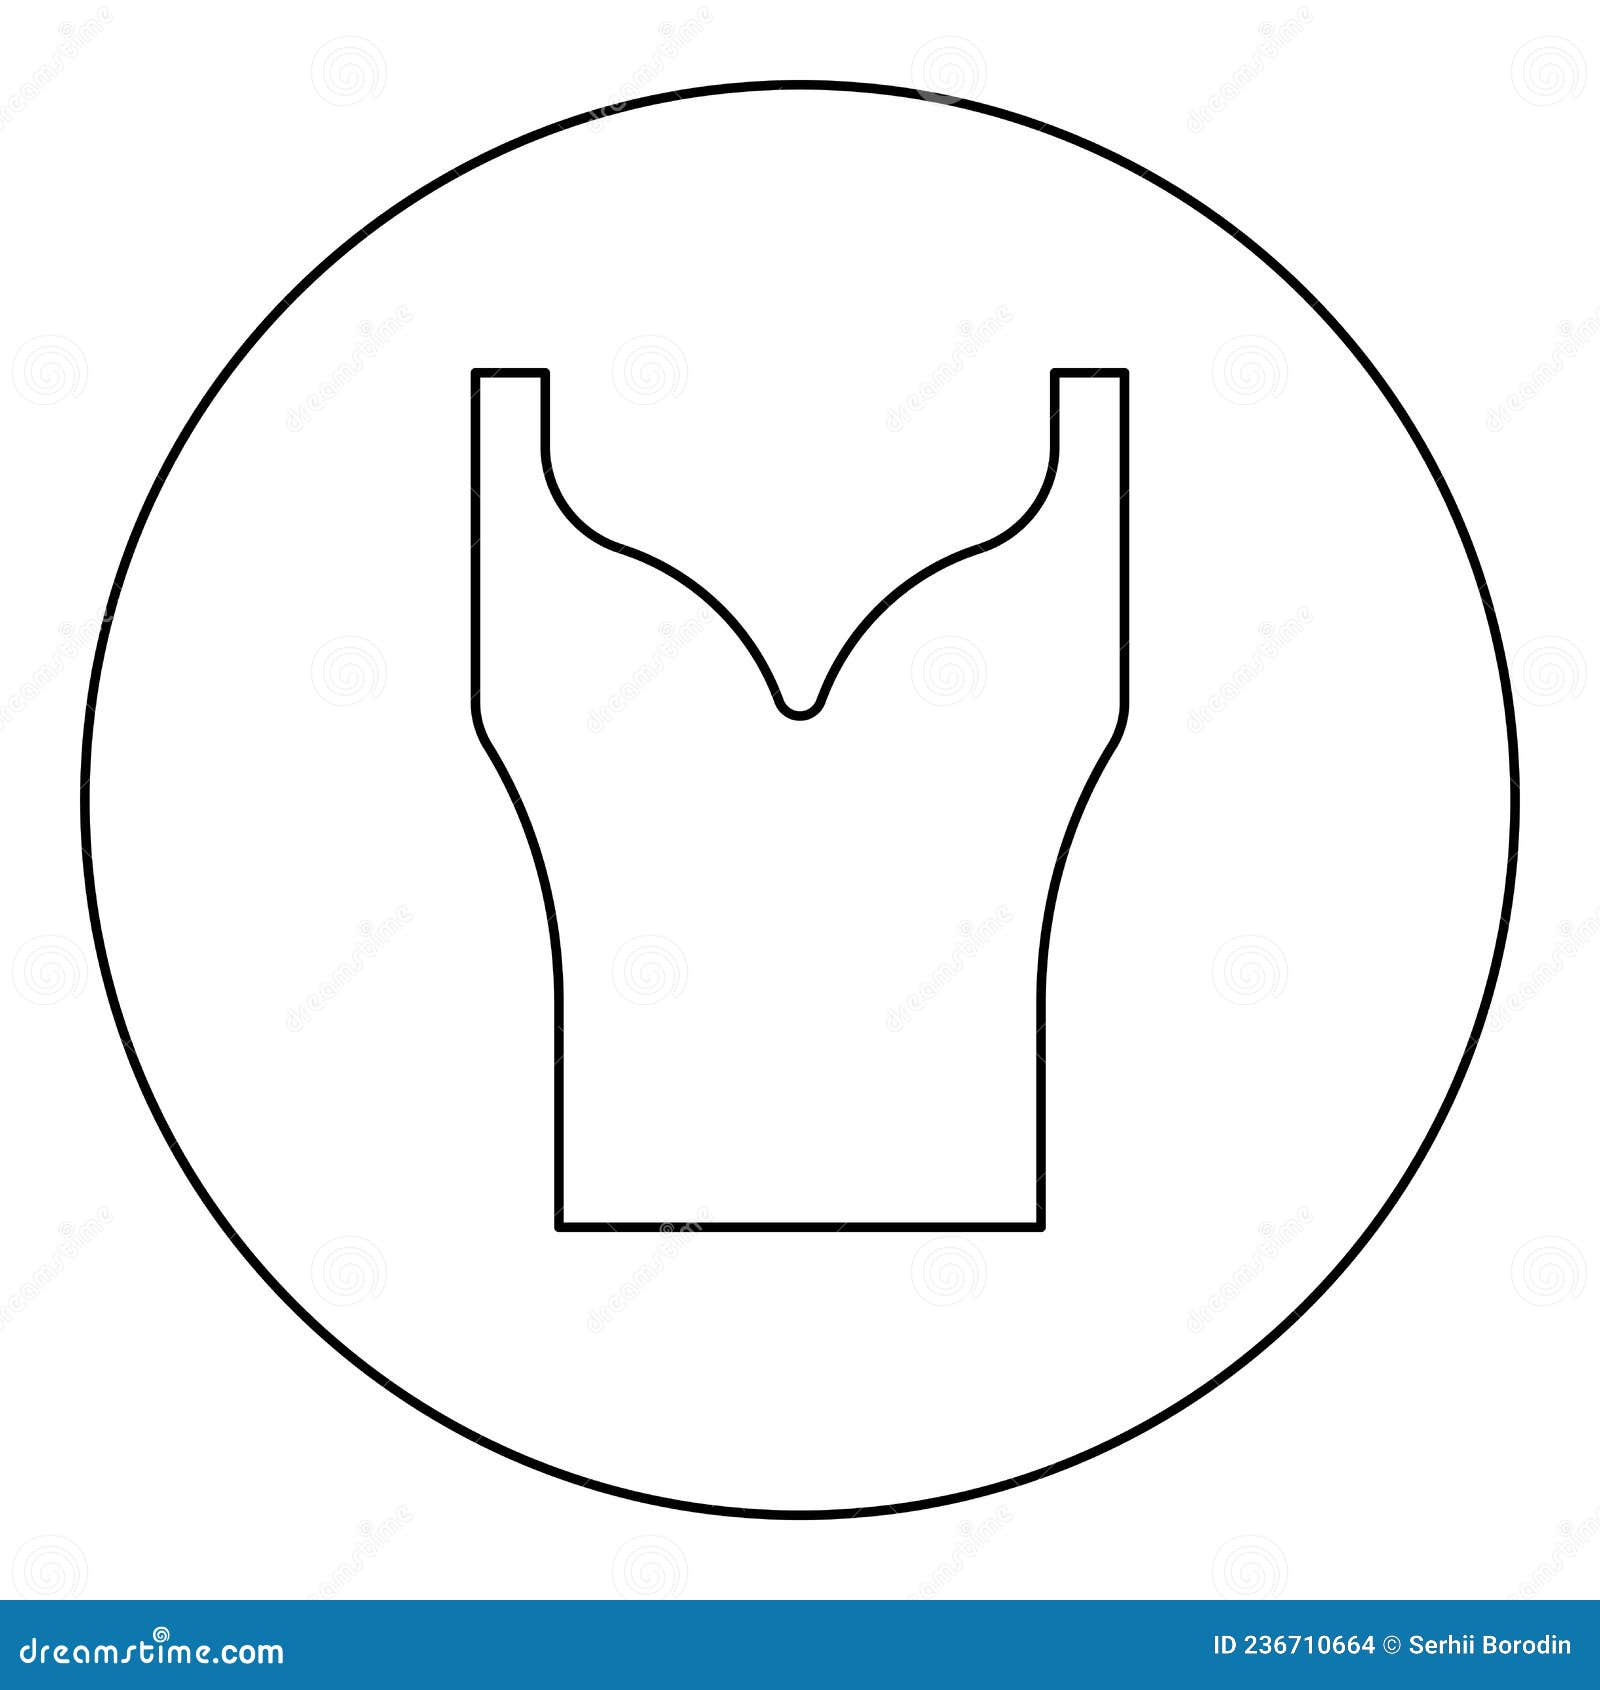 Vestimenta Femenina Top Dress Jersey Blouse Jumper Singlet Icono En Círculo Color Negro Ilustración Vectorial Contorno Ilustración del Vector - Ilustración estilo, puente: 236710664